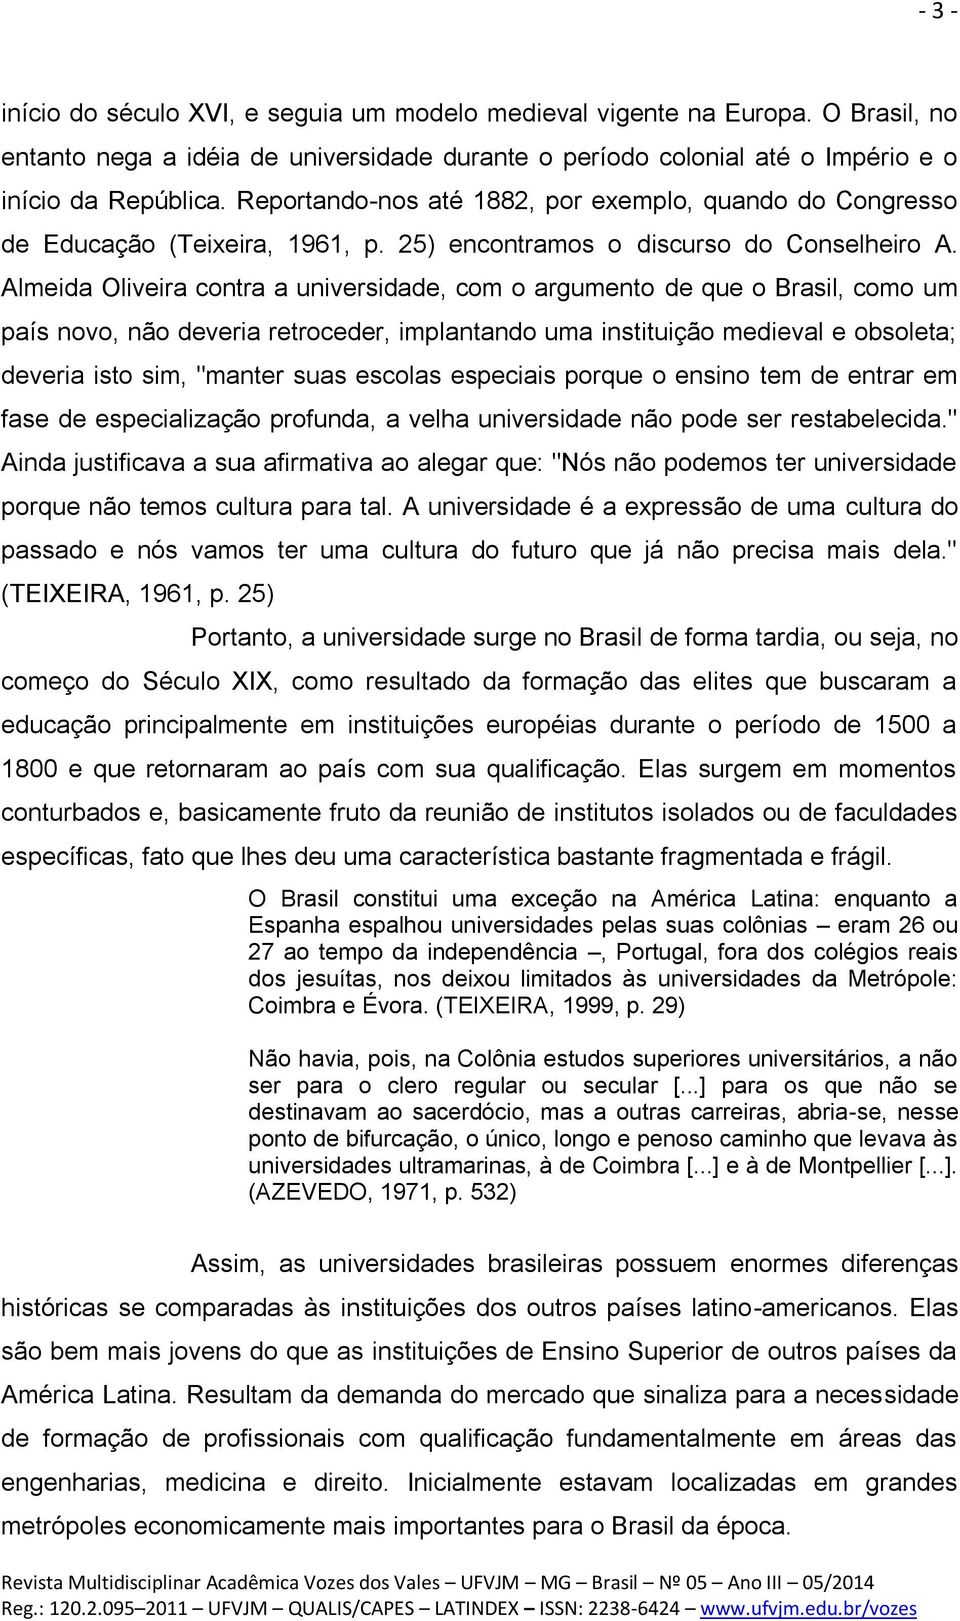 Almeida Oliveira contra a universidade, com o argumento de que o Brasil, como um país novo, não deveria retroceder, implantando uma instituição medieval e obsoleta; deveria isto sim, "manter suas